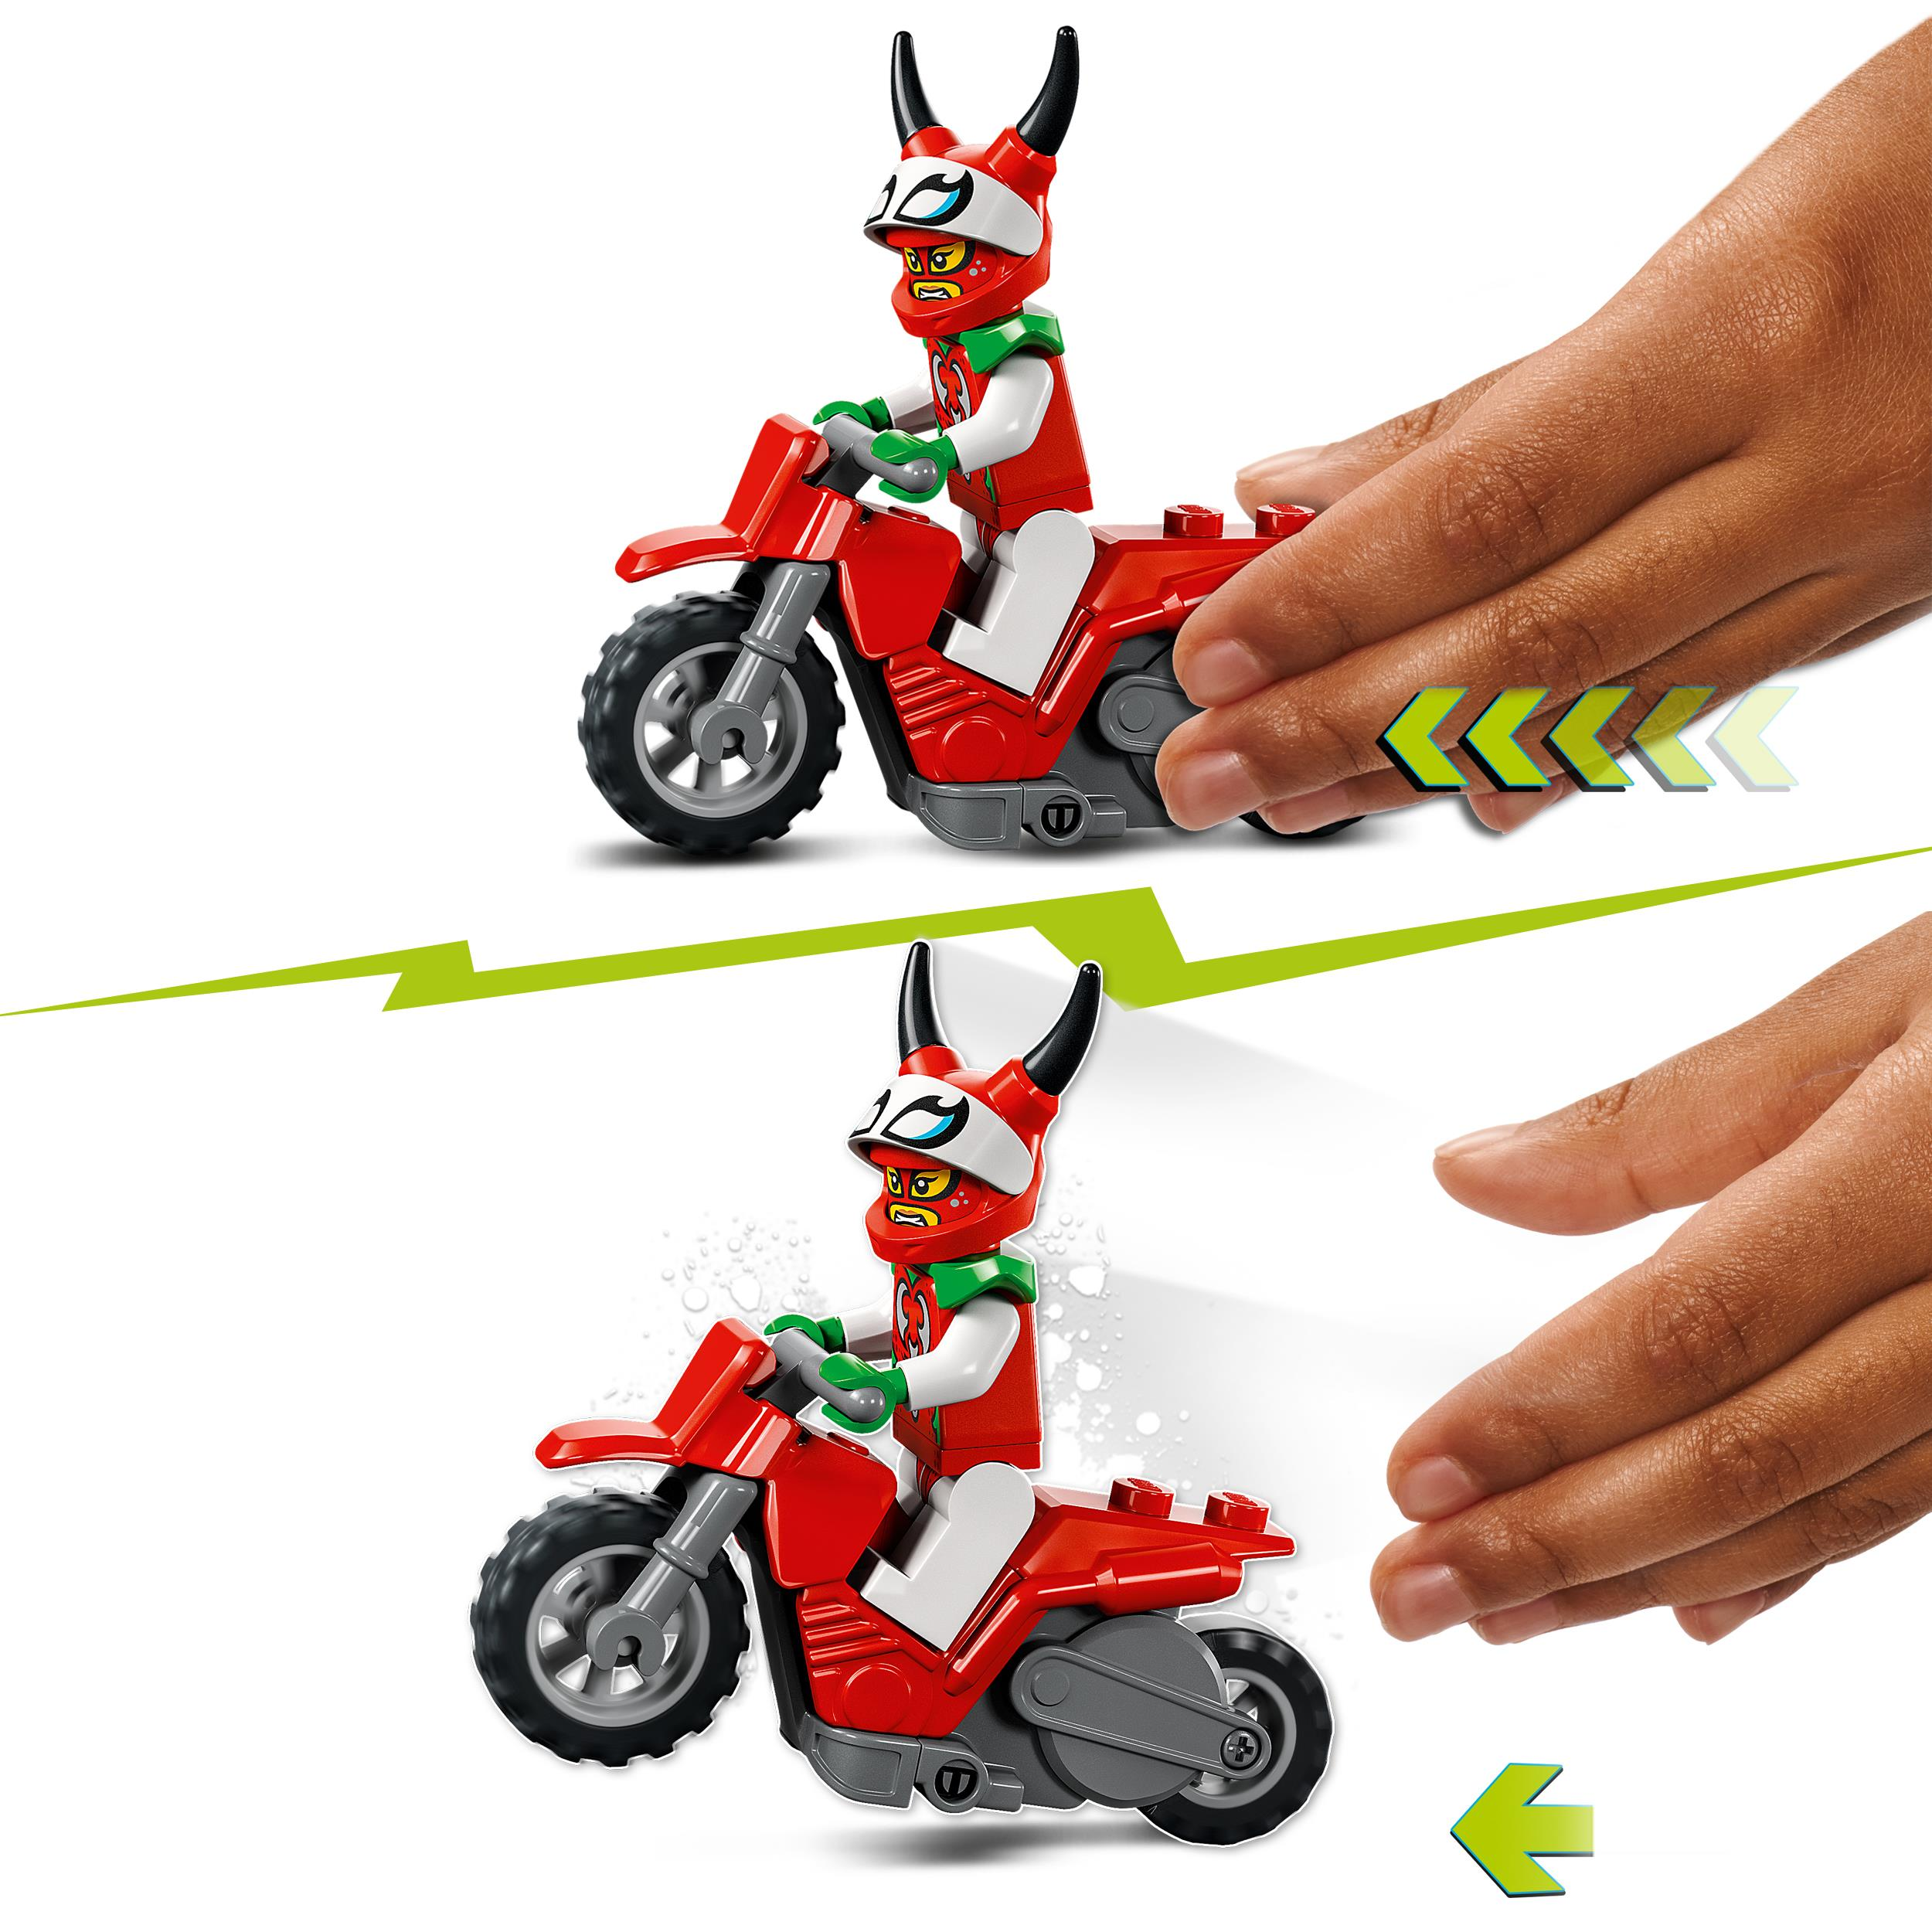 Skorpion-Stuntbike Bausatz, LEGO City Stuntz Mehrfarbig 60332